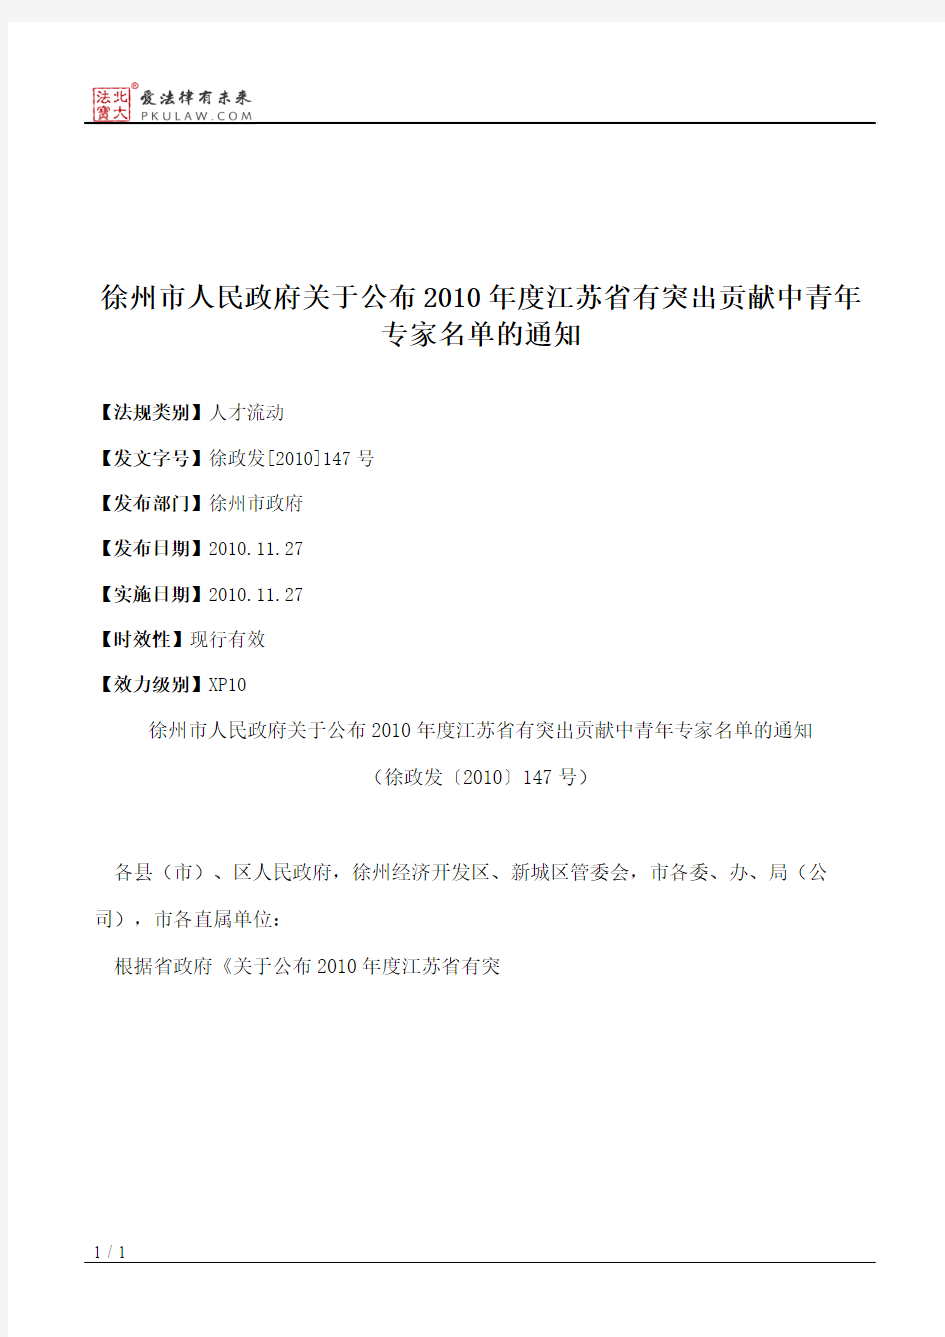 徐州市人民政府关于公布2010年度江苏省有突出贡献中青年专家名单的通知